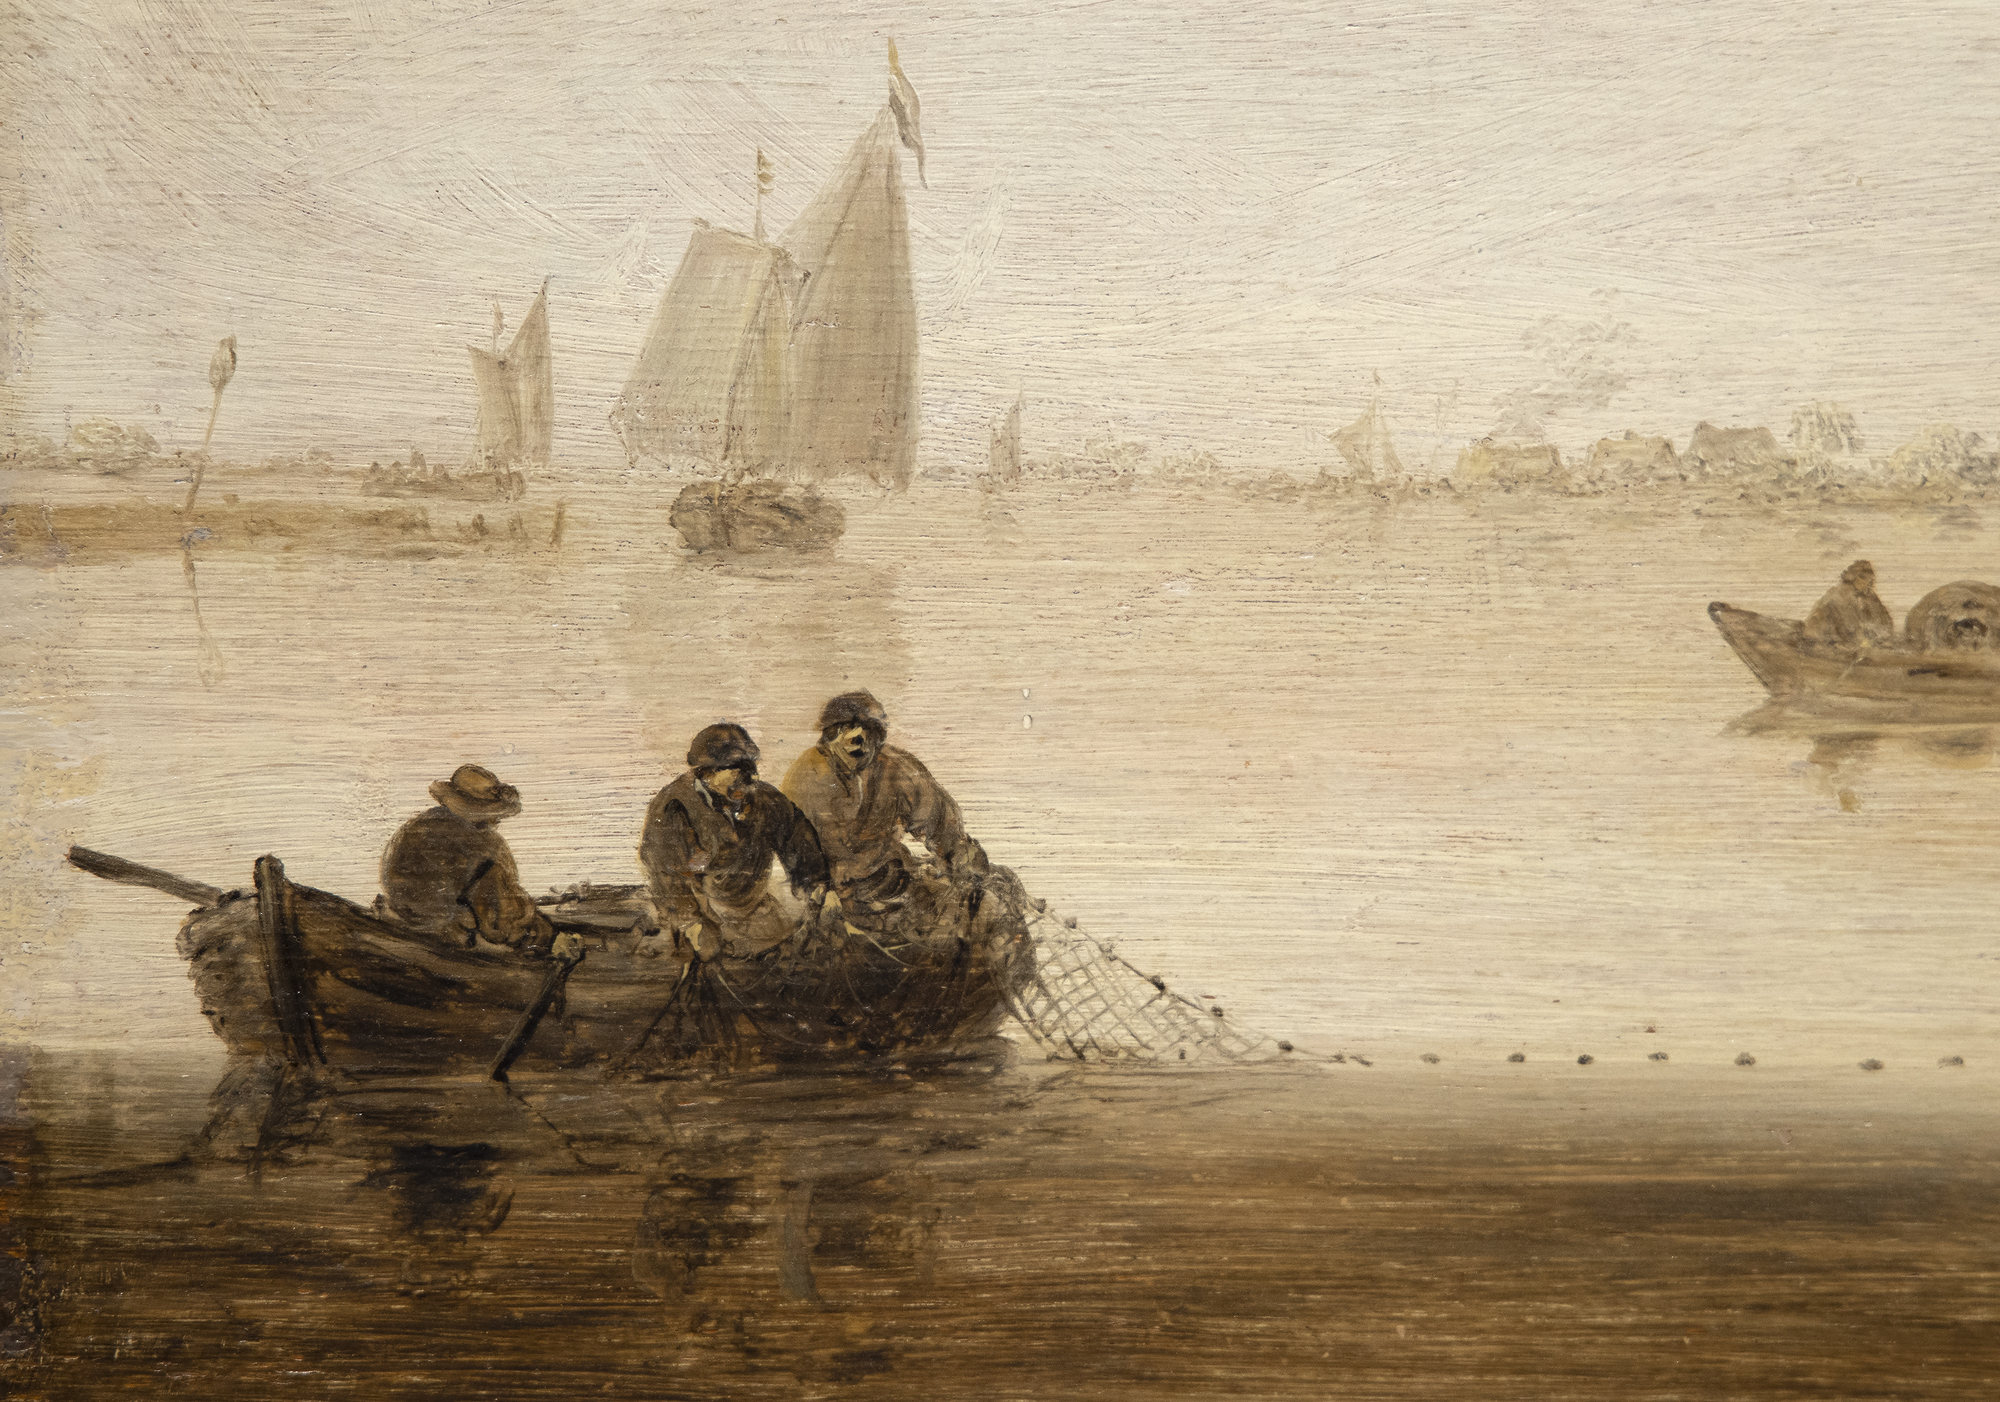 JAN JOSEPHSZOON فان GOYEN - المناظر الطبيعية النهر مع طاحونة وكنيسة - النفط على لوحة - 22 1/2 × 31 3/4 في.